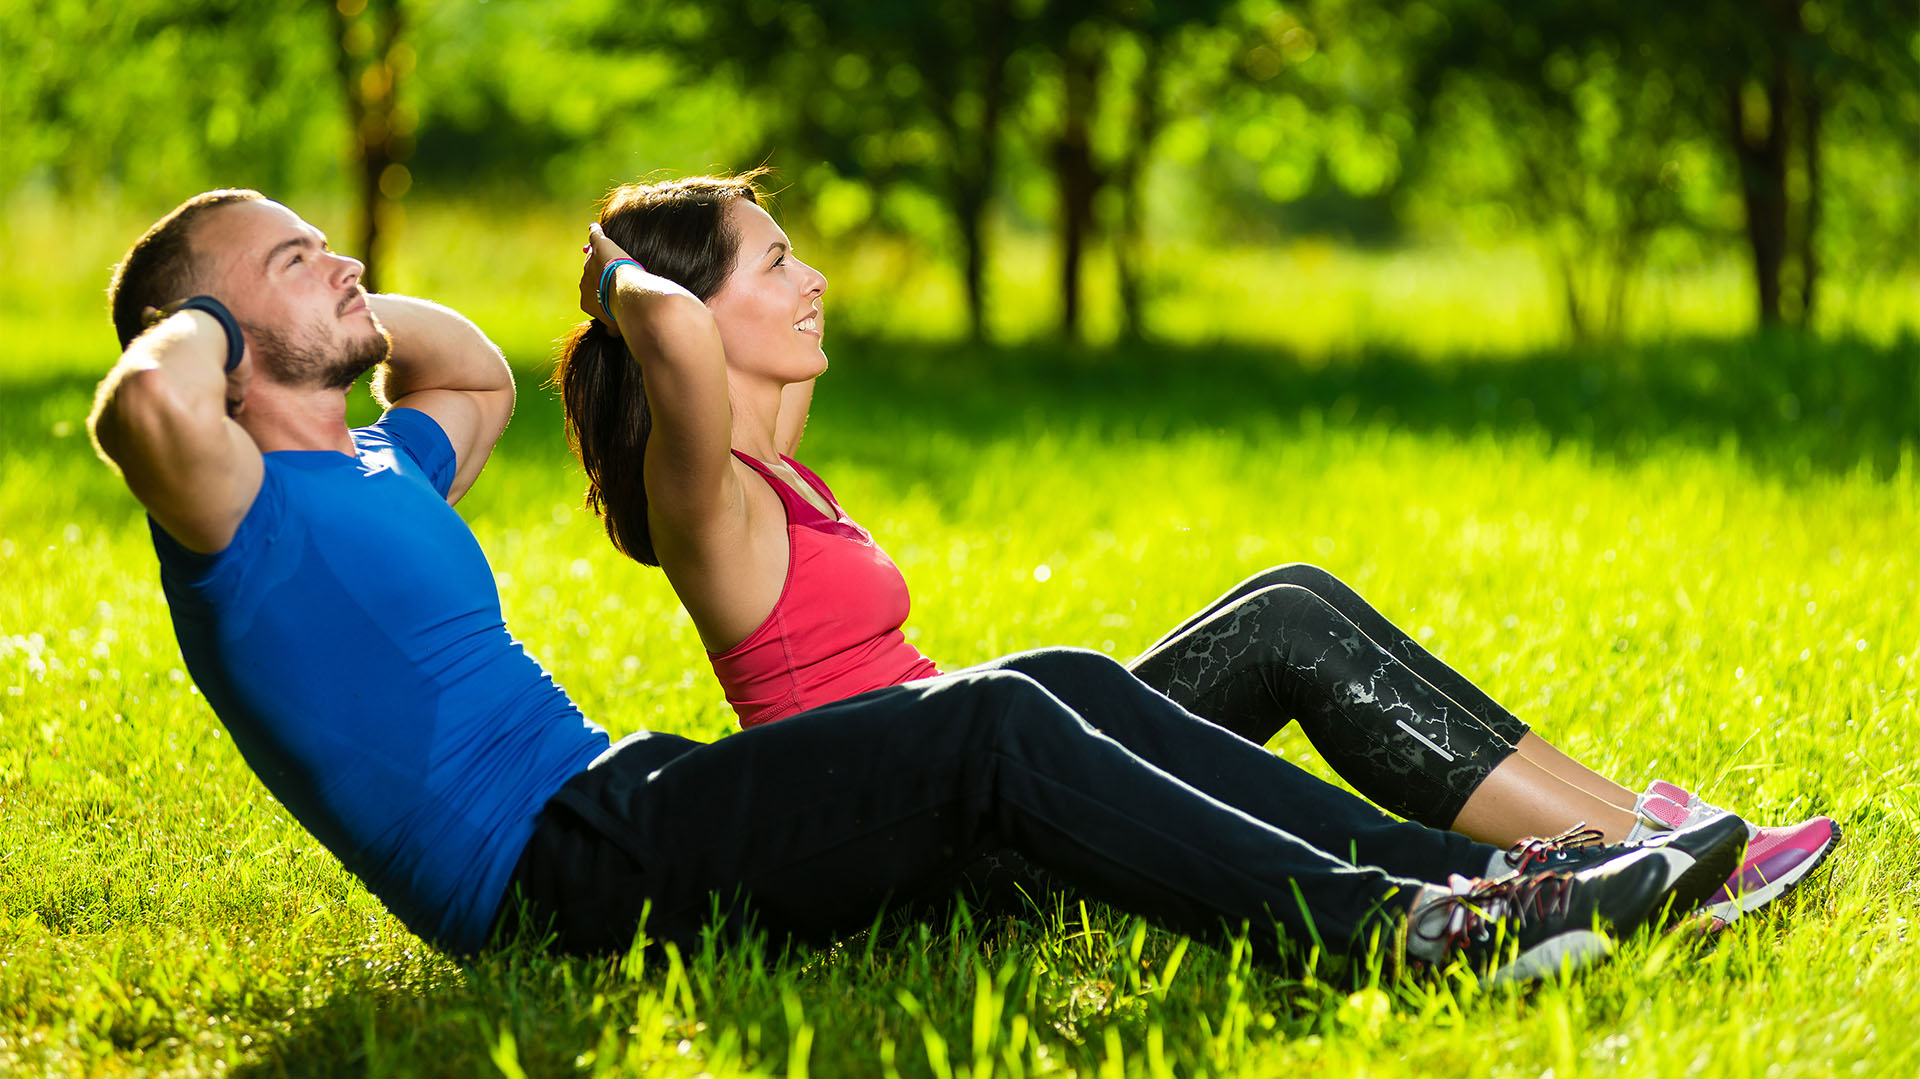 Incluir el ejercicio regular como parte de un estilo de vida saludable es un cambio de hábito que puede necesitar motivación (Shutterstock)